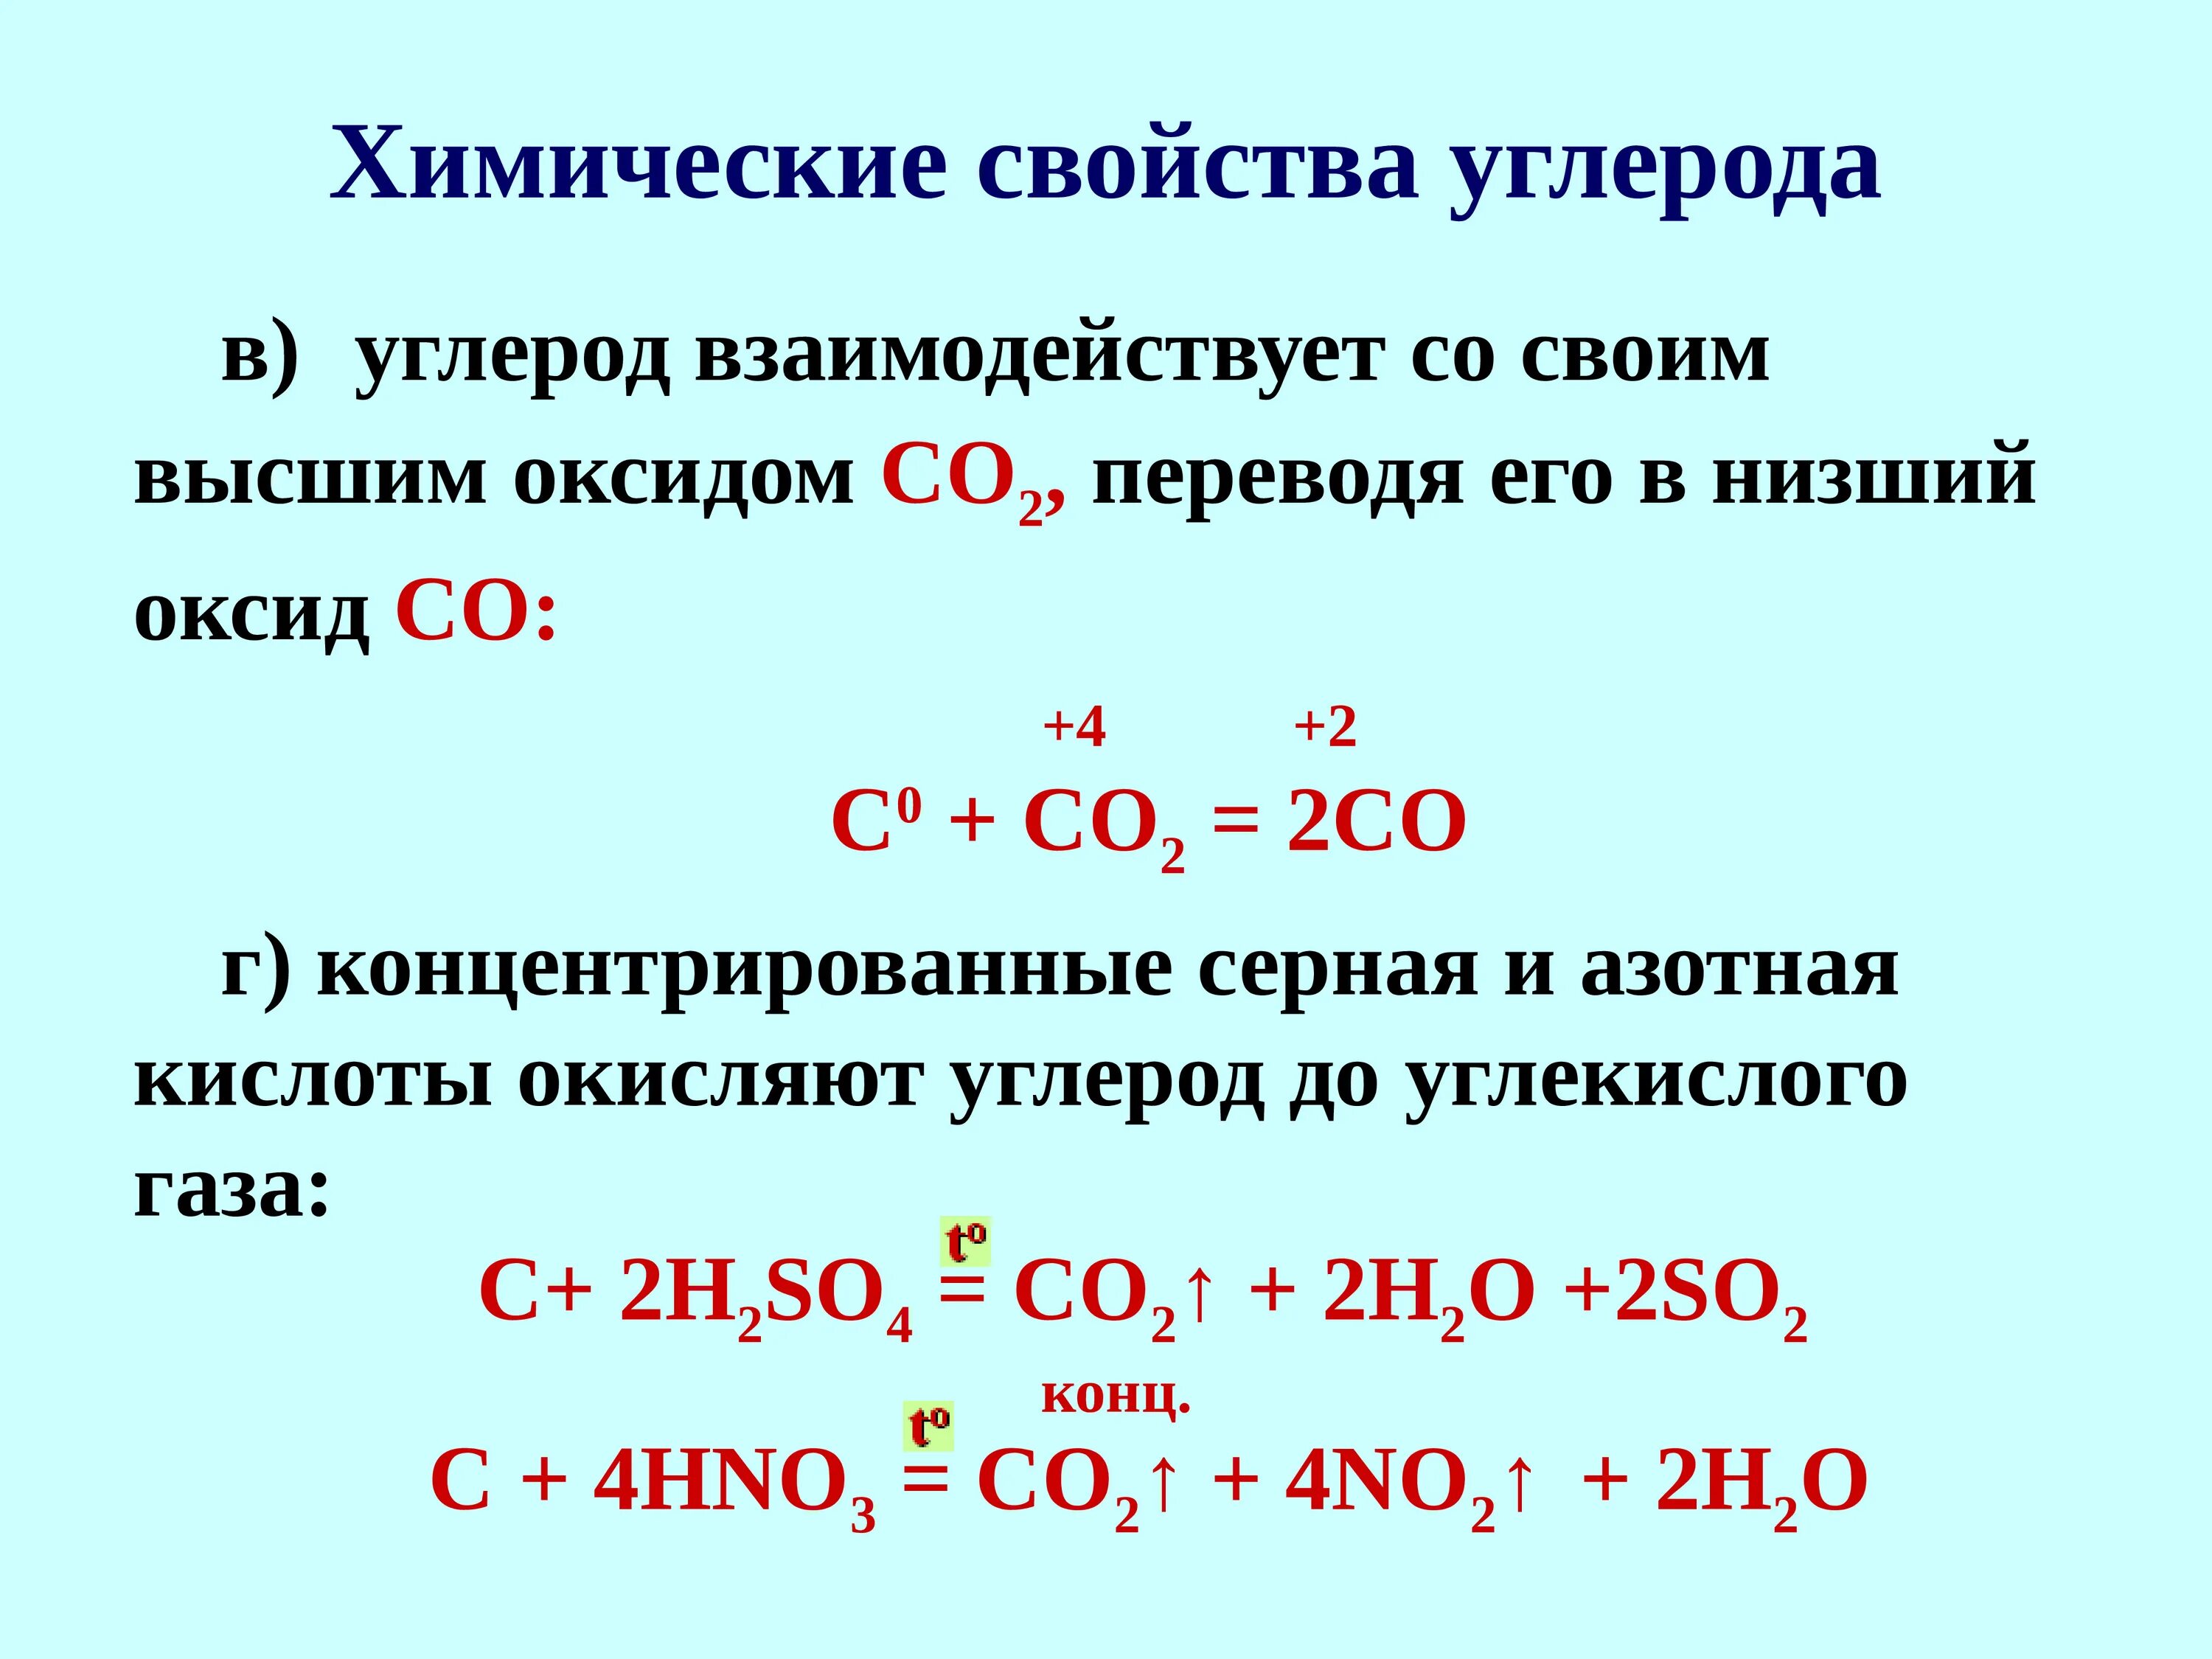 Углерод плюс азотная концентрированная. Углерод плюс концентрированная серной кислота. Взаимодействие углерода с концентрированной серной кислотой. Углерод взаимодействует с кислотами. Серная кислота co2 реакция